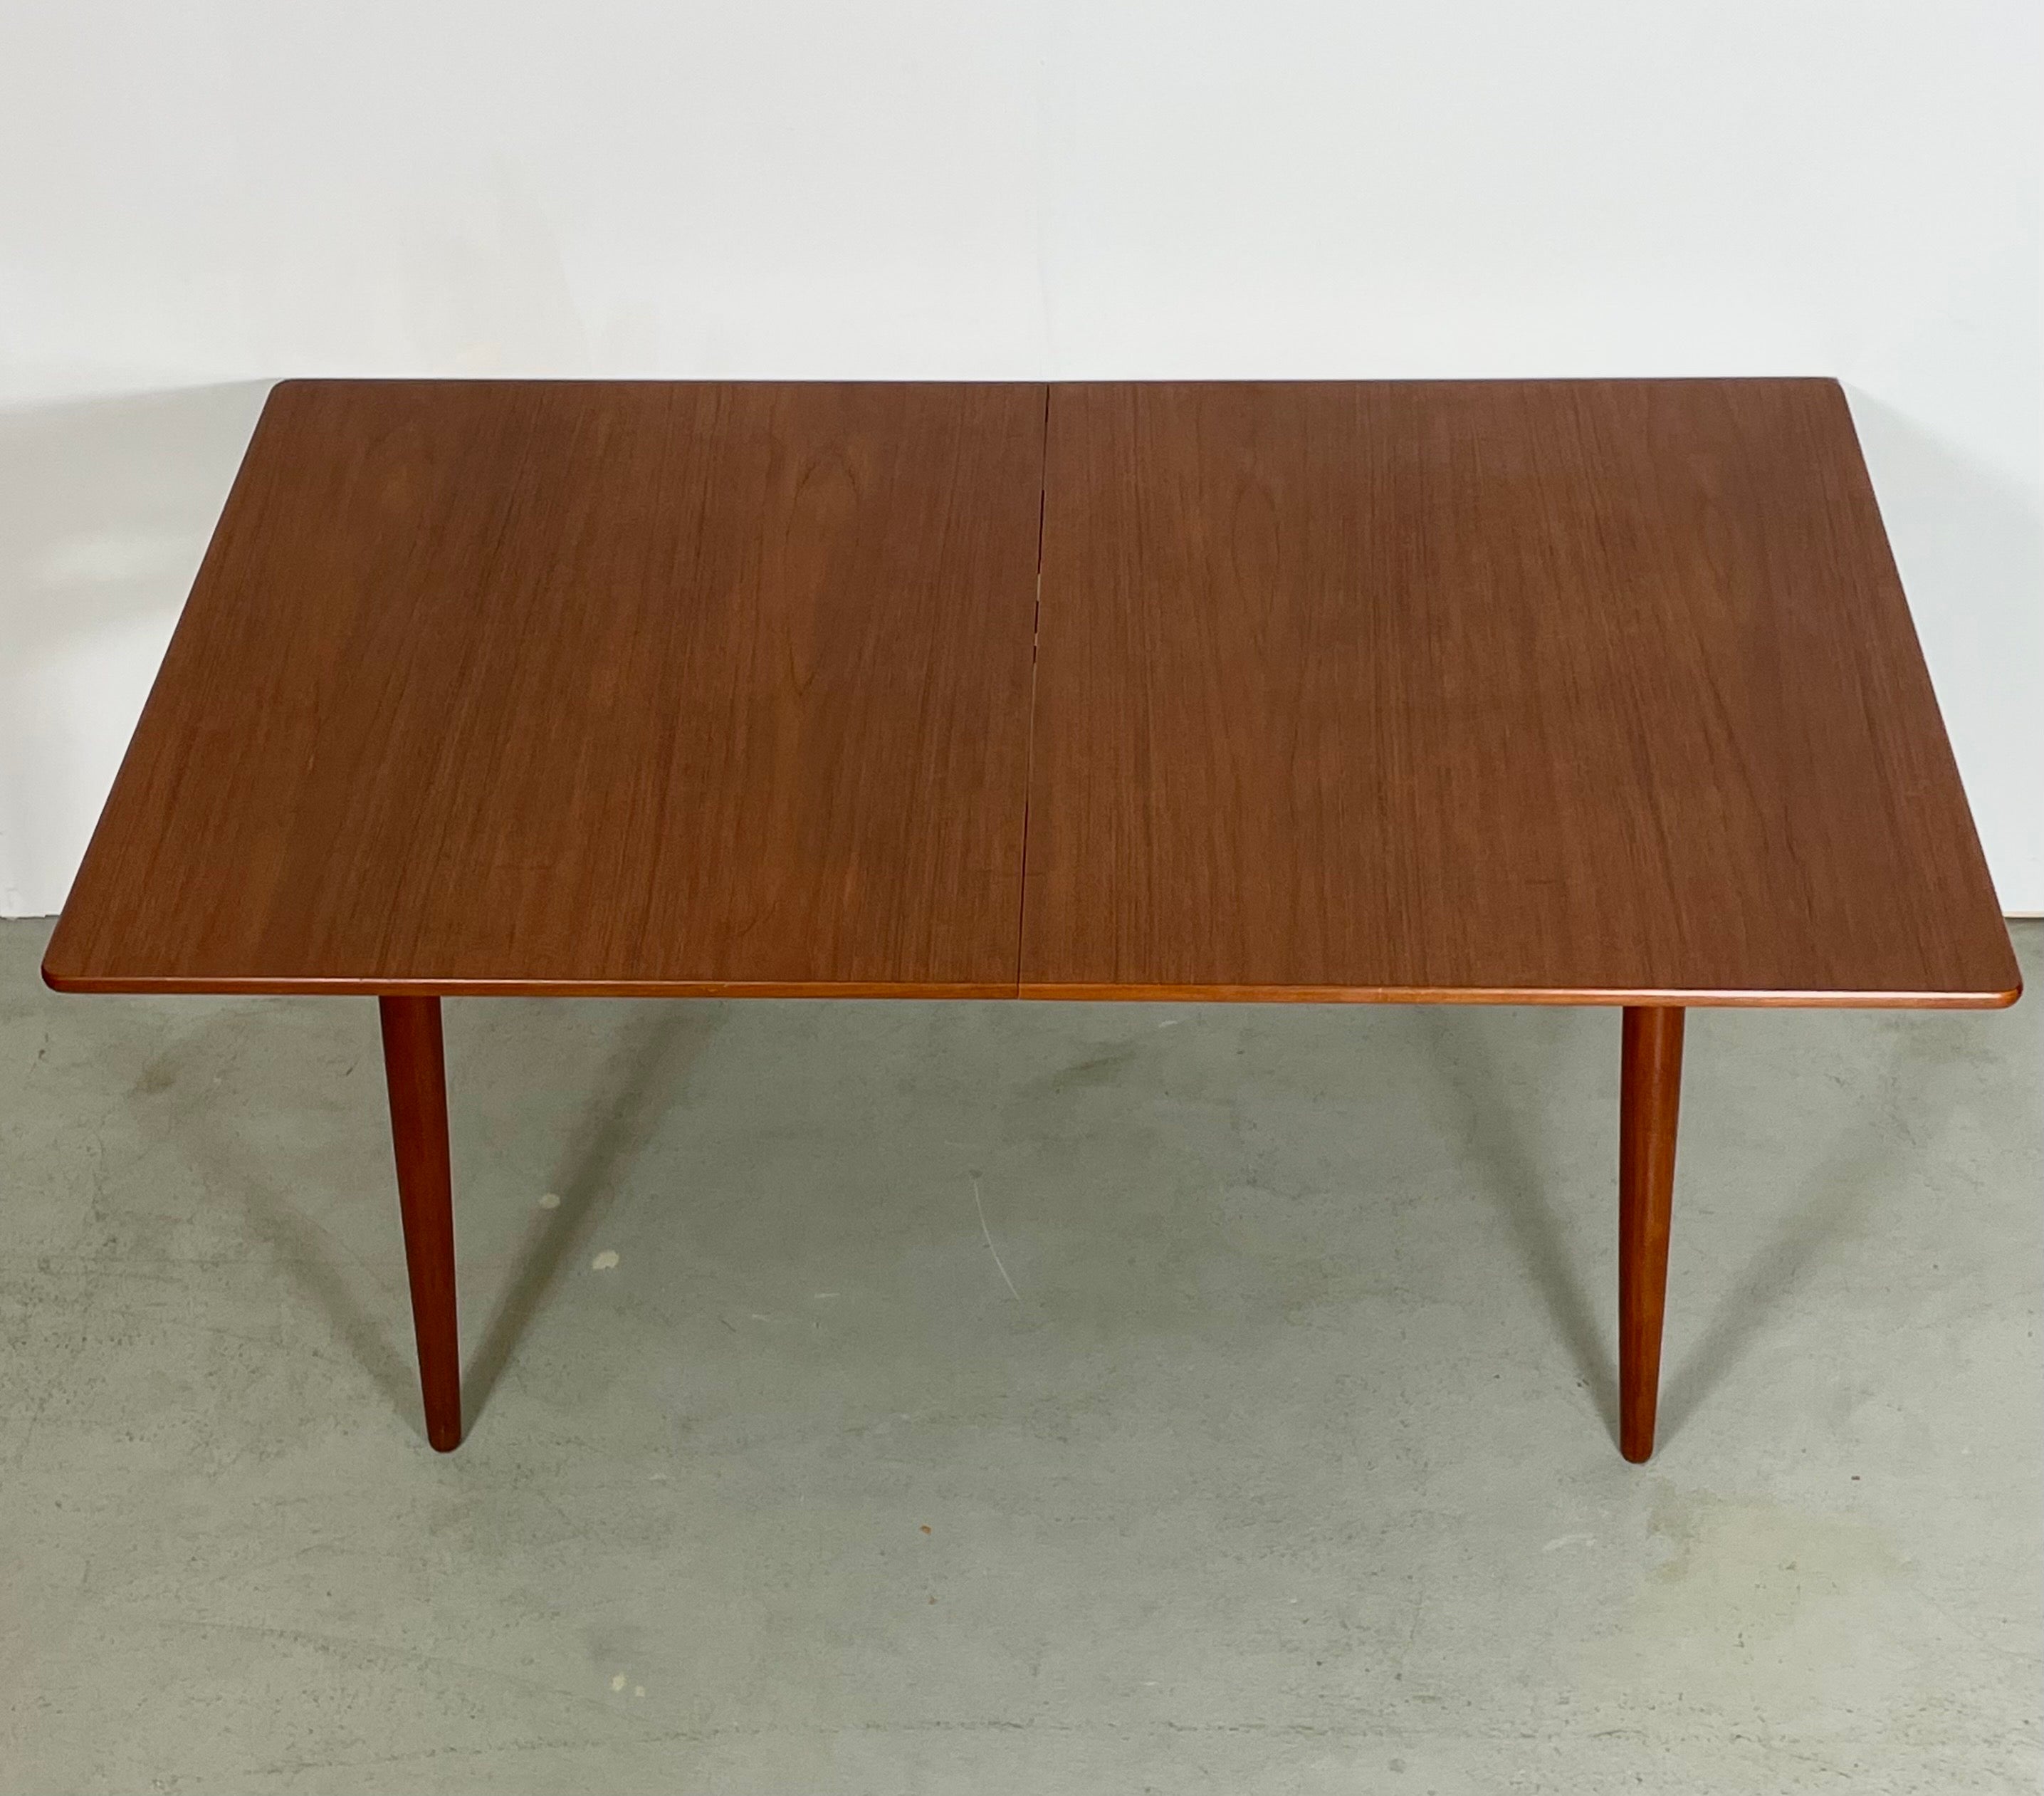 Dies ist eine schöne und sehr seltene Großauflage des Modells AT 310. Ein Esstisch, entworfen von Hans J. Wegner, hergestellt von Andreas Tuck in Dänemark. Ausgestattet mit 2 separaten Verlängerungsflügeln von je 40 cm. Beine und Tischplatte aus